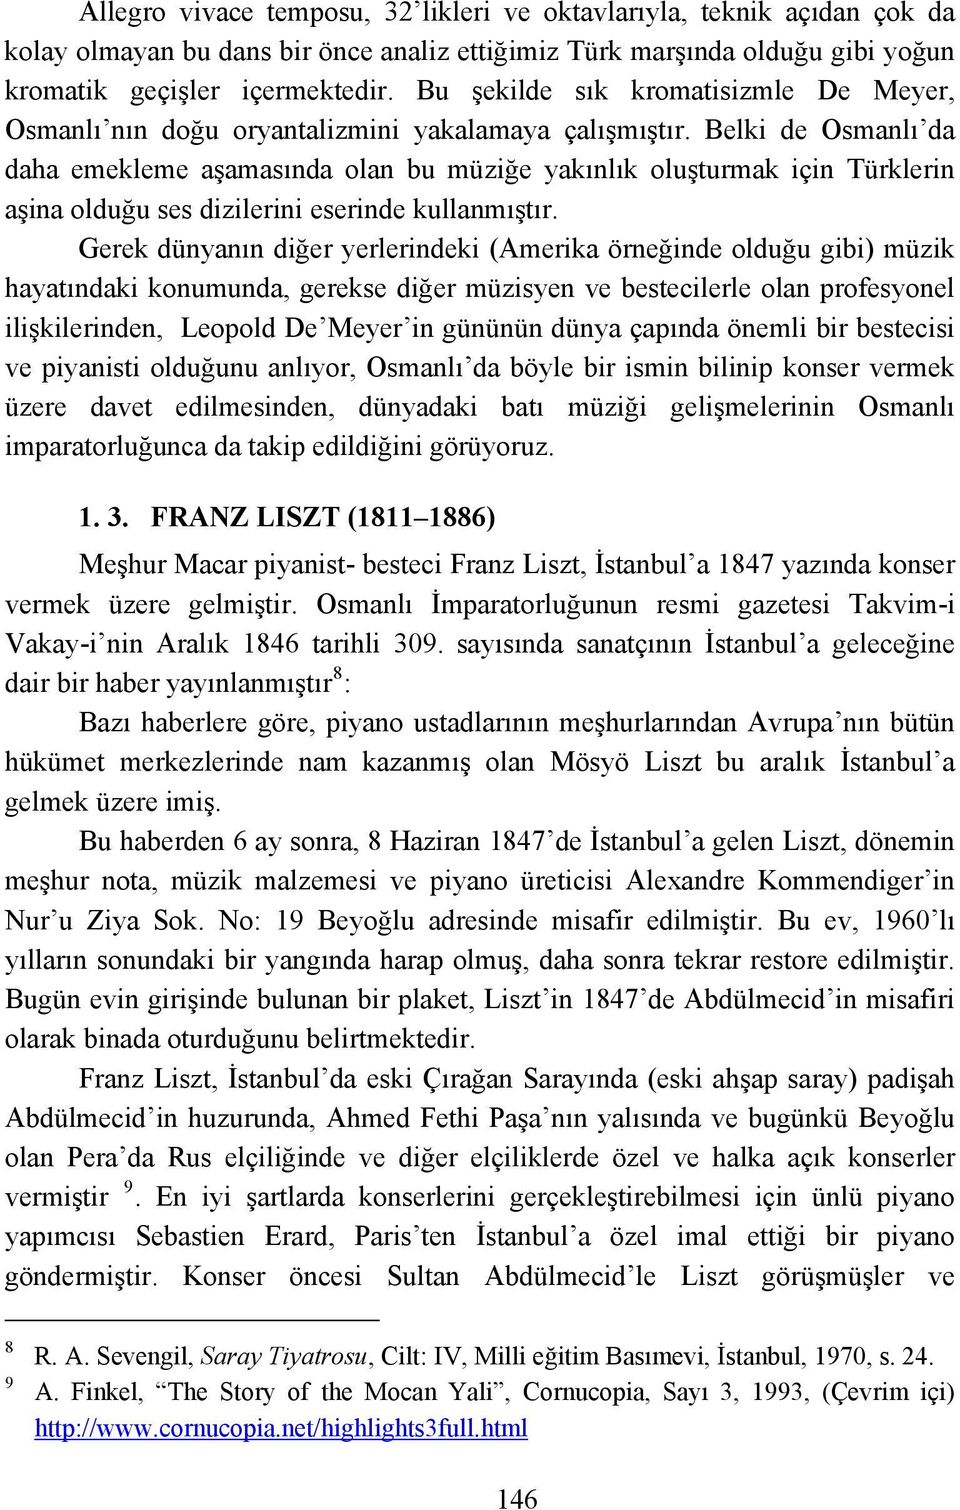 Belki de Osmanlı da daha emekleme aşamasında olan bu müziğe yakınlık oluşturmak için Türklerin aşina olduğu ses dizilerini eserinde kullanmıştır.